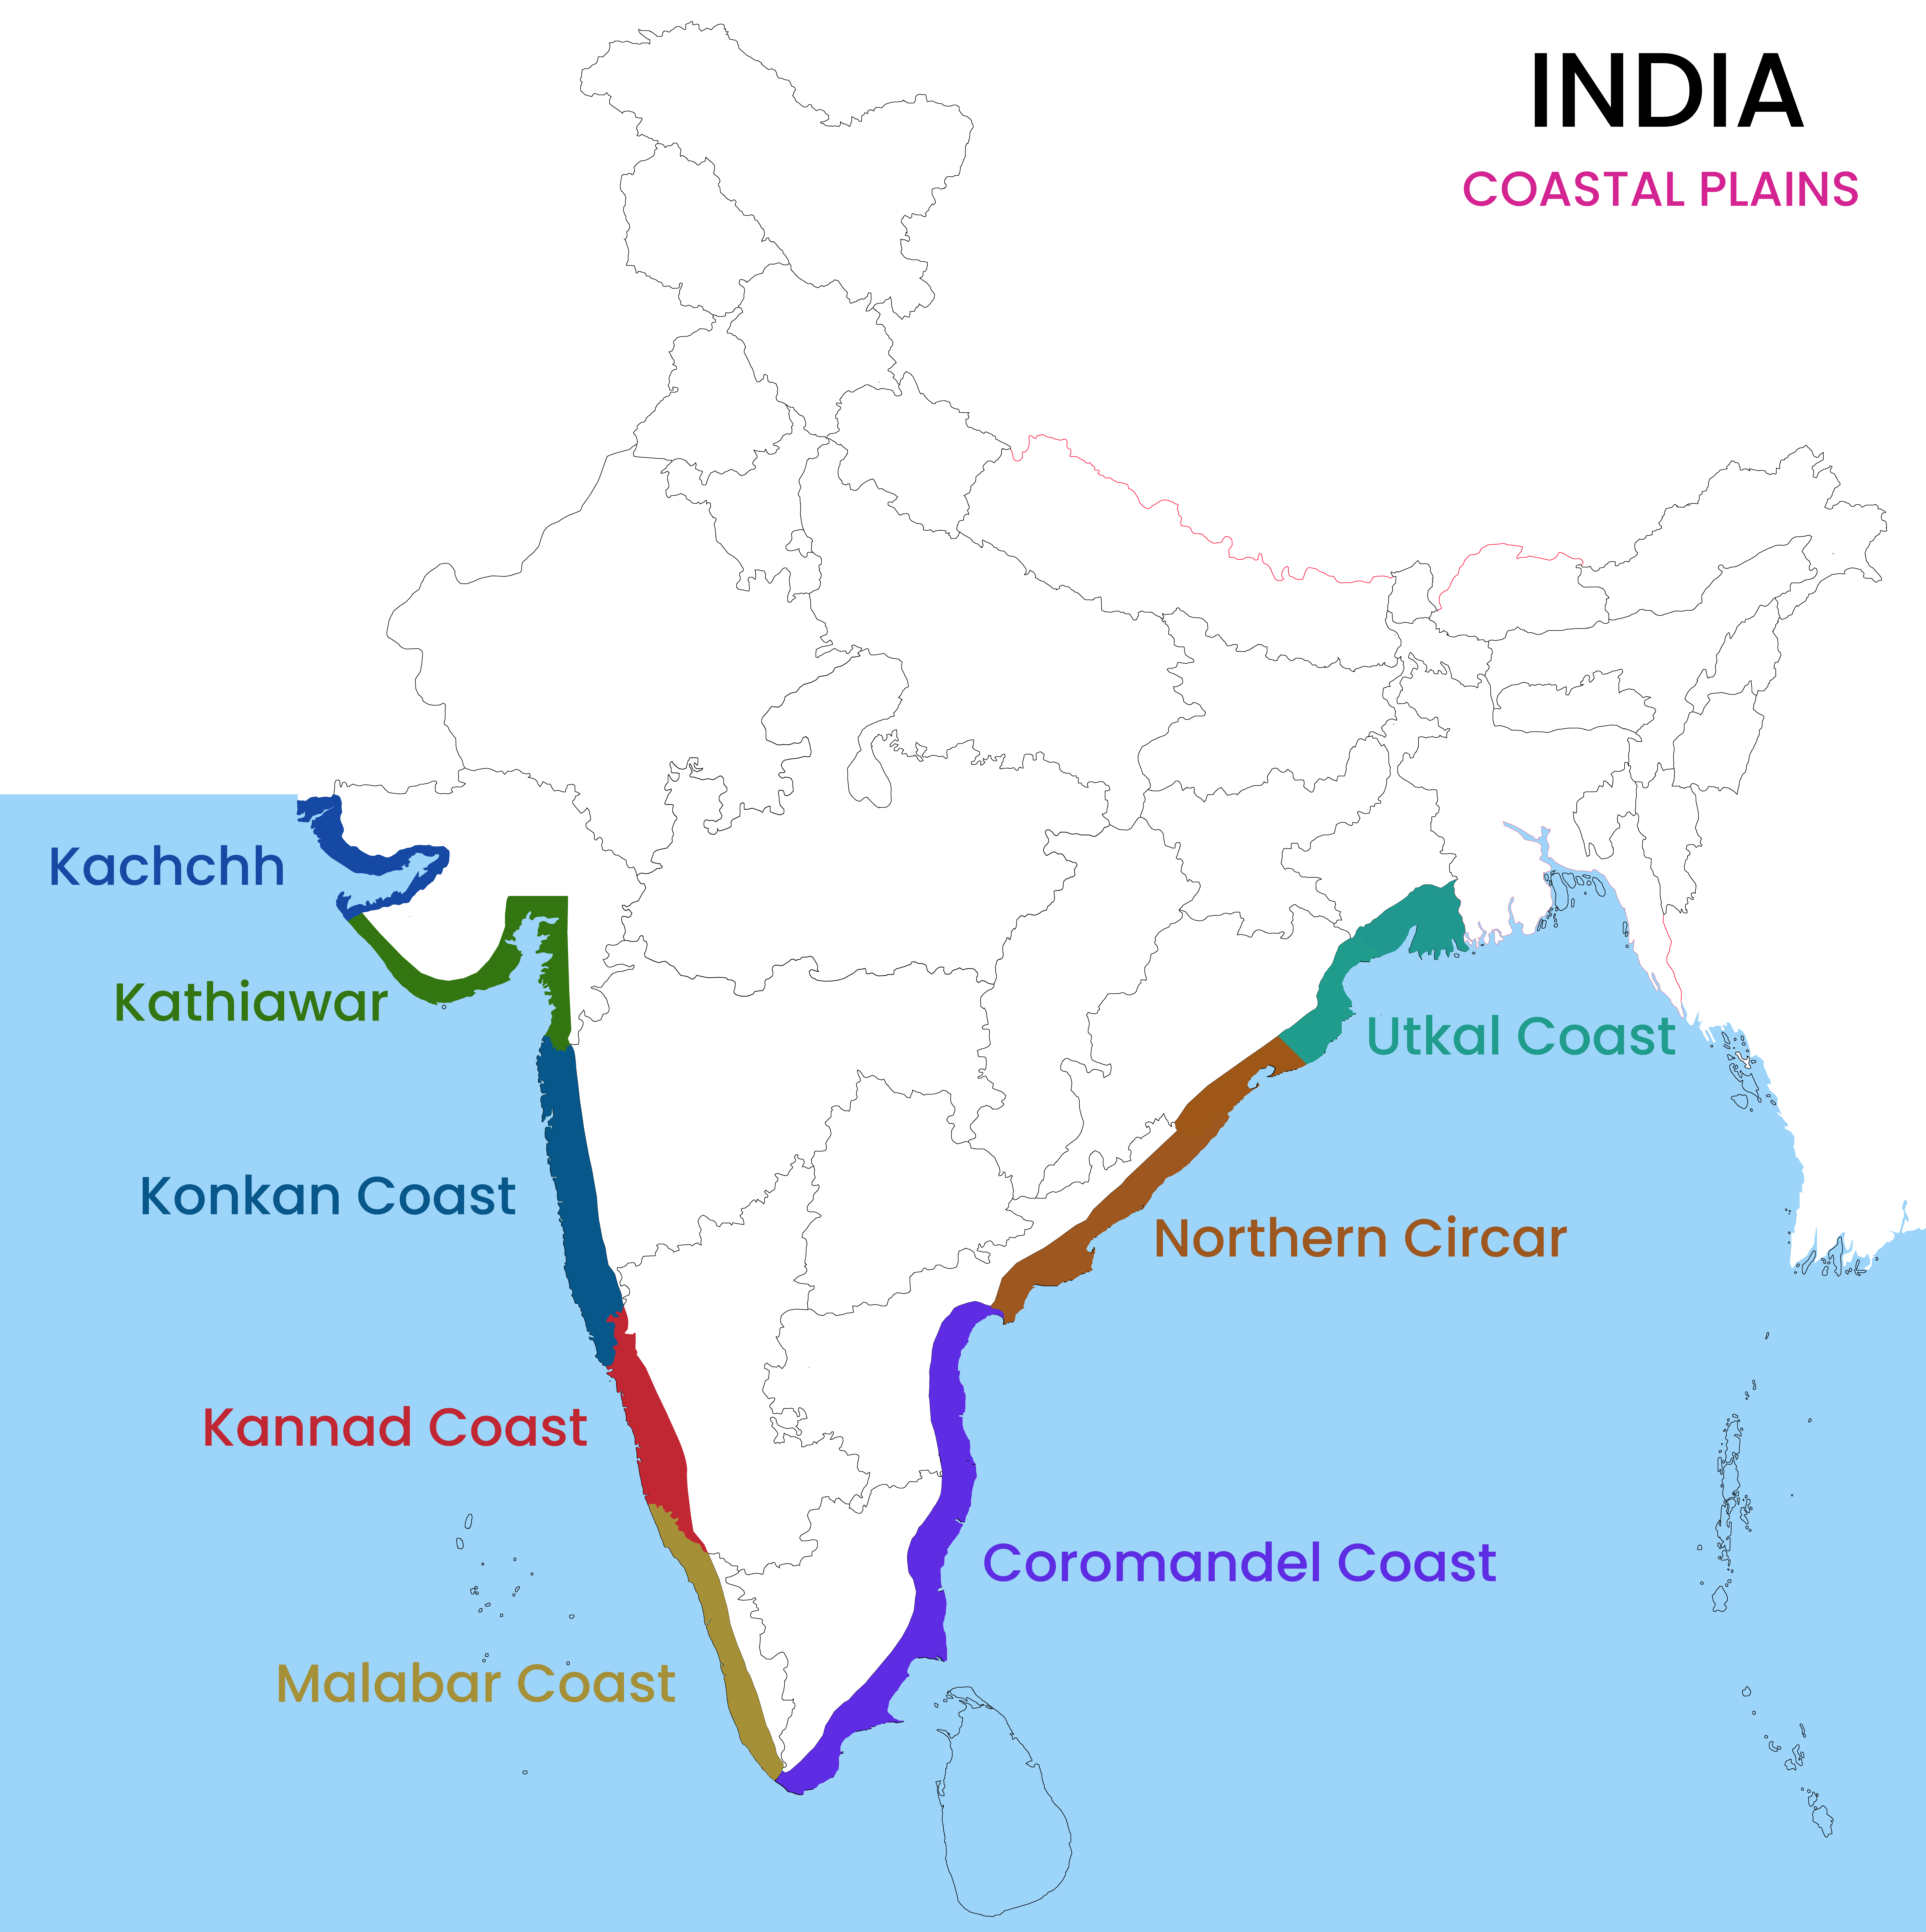 Coastal Plains of India